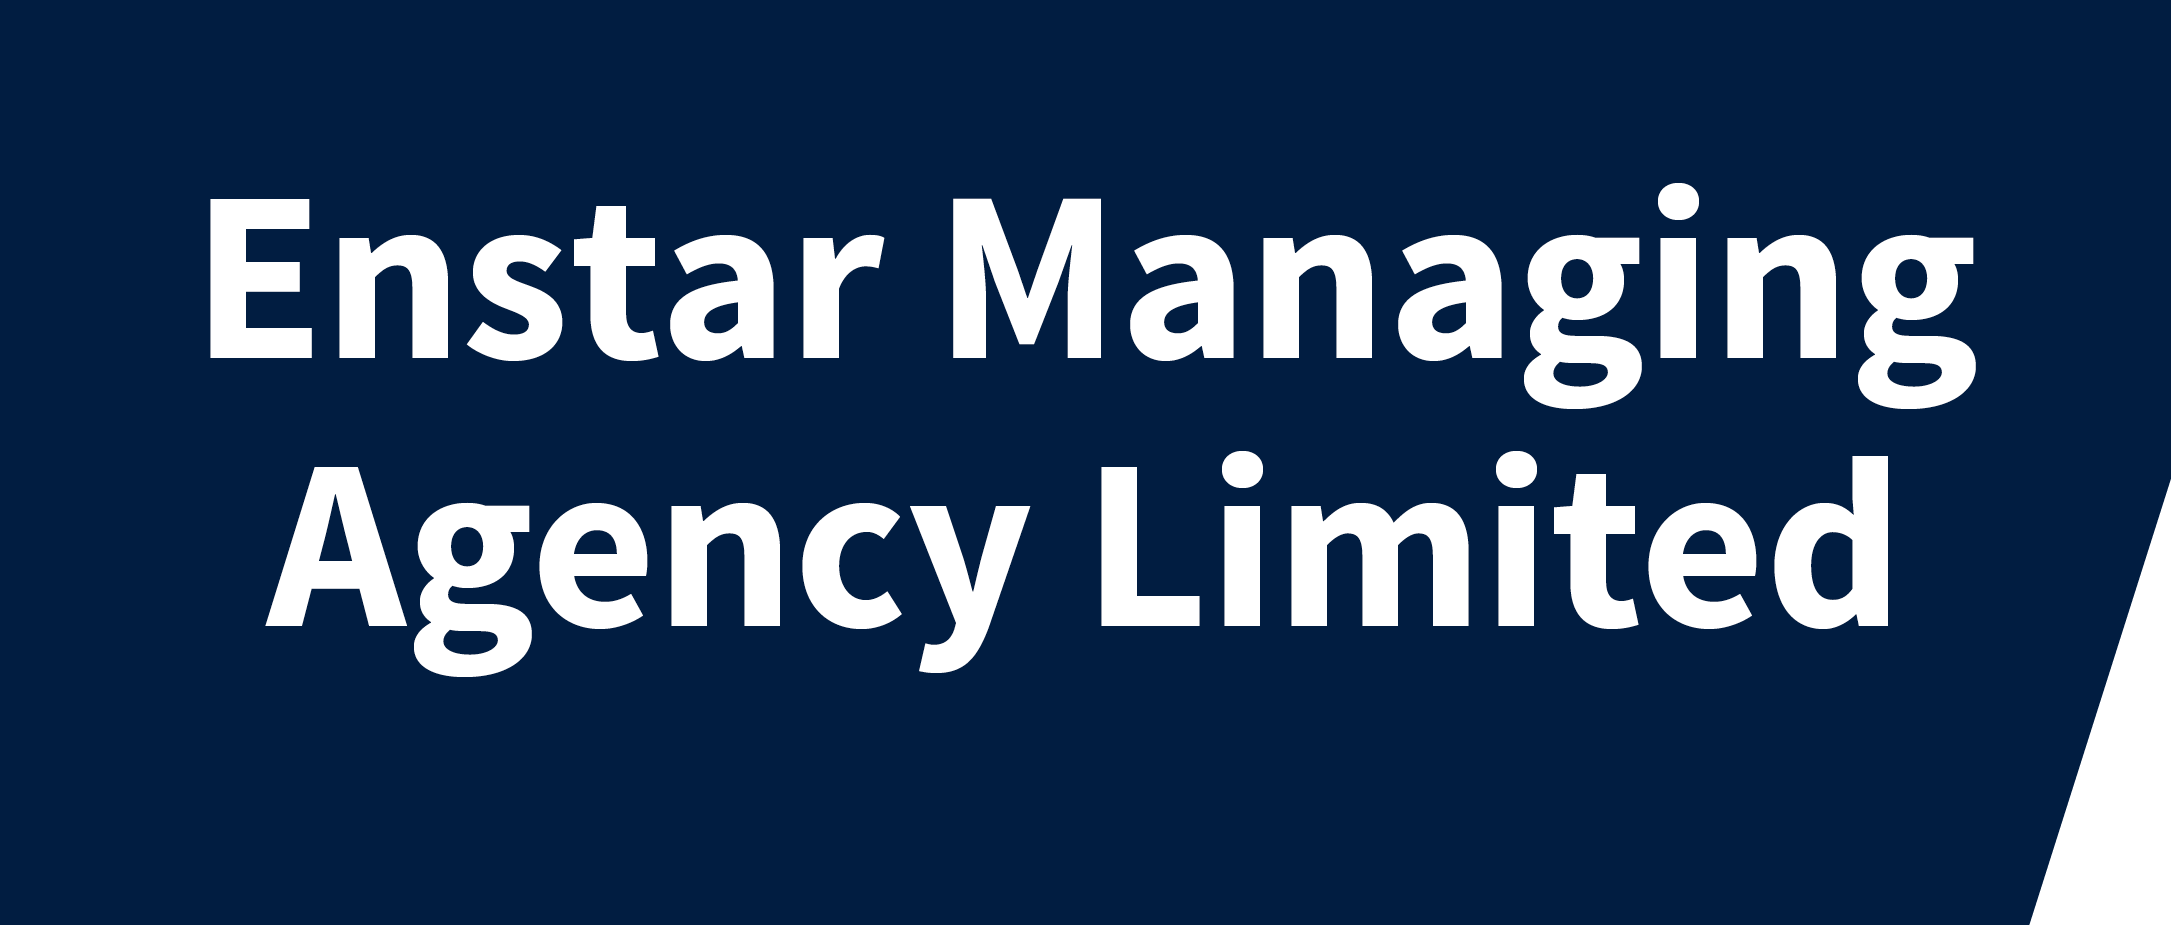 Enstar Managing Agency Limited